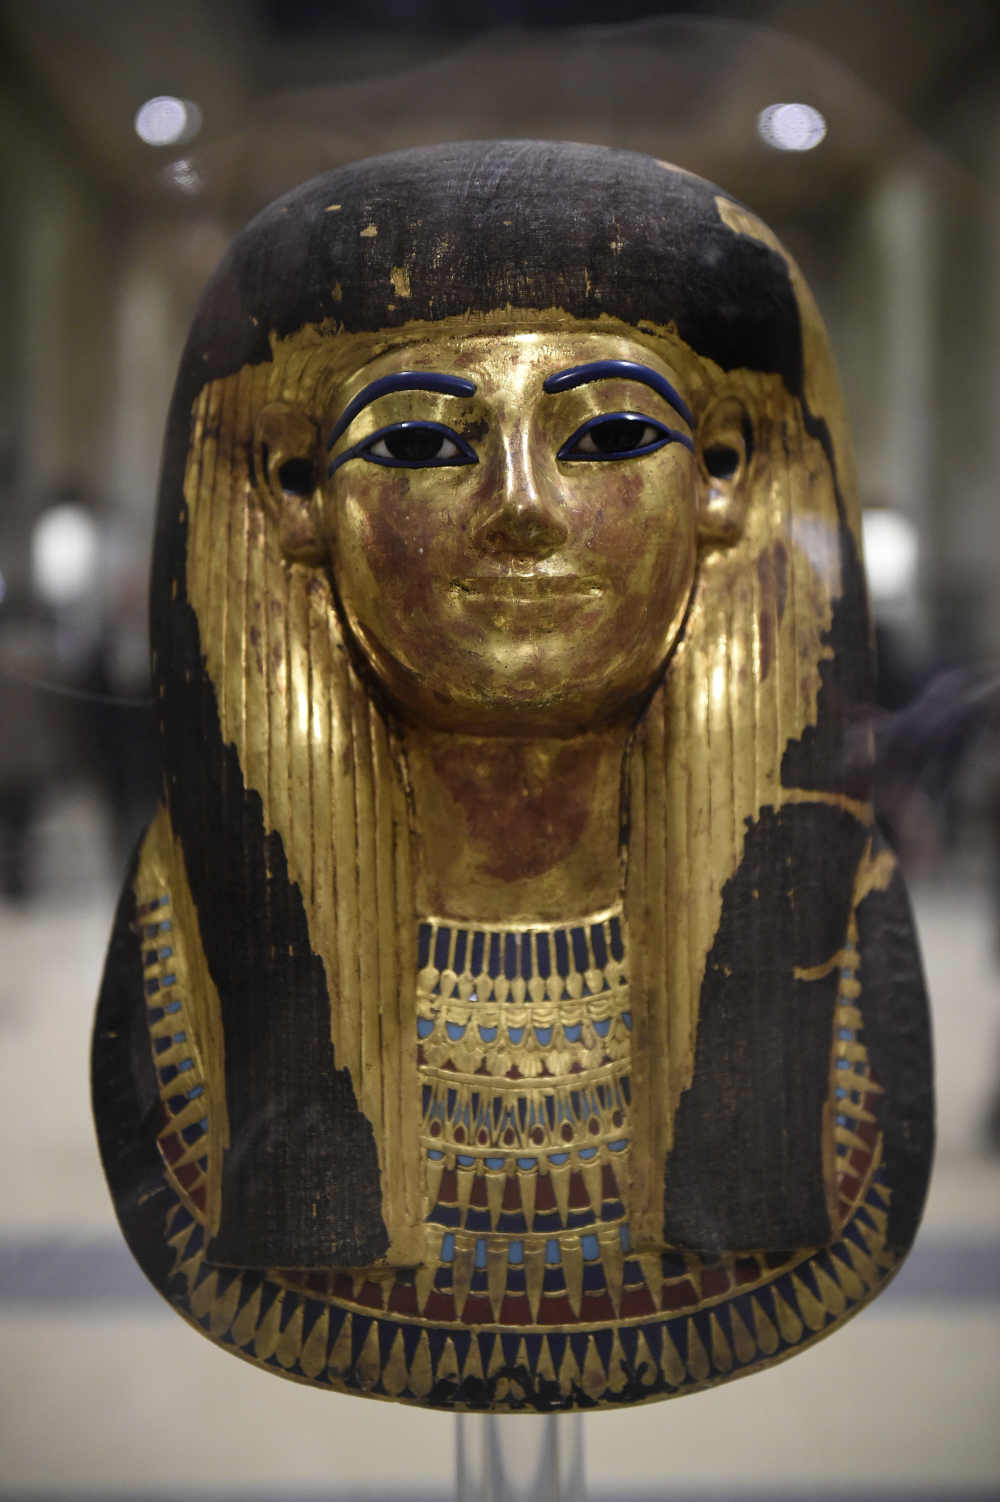  หน้ากากกระดาษชุบทองของธูยา ที่จัดแสดงในพิพิธภัณฑ์อียิปต์ ระหว่างการฉลอง 116 ปี ของพิพิธภัณฑ์อียิปต์ในไคโร (Khaled DESOUKI / AFP) 